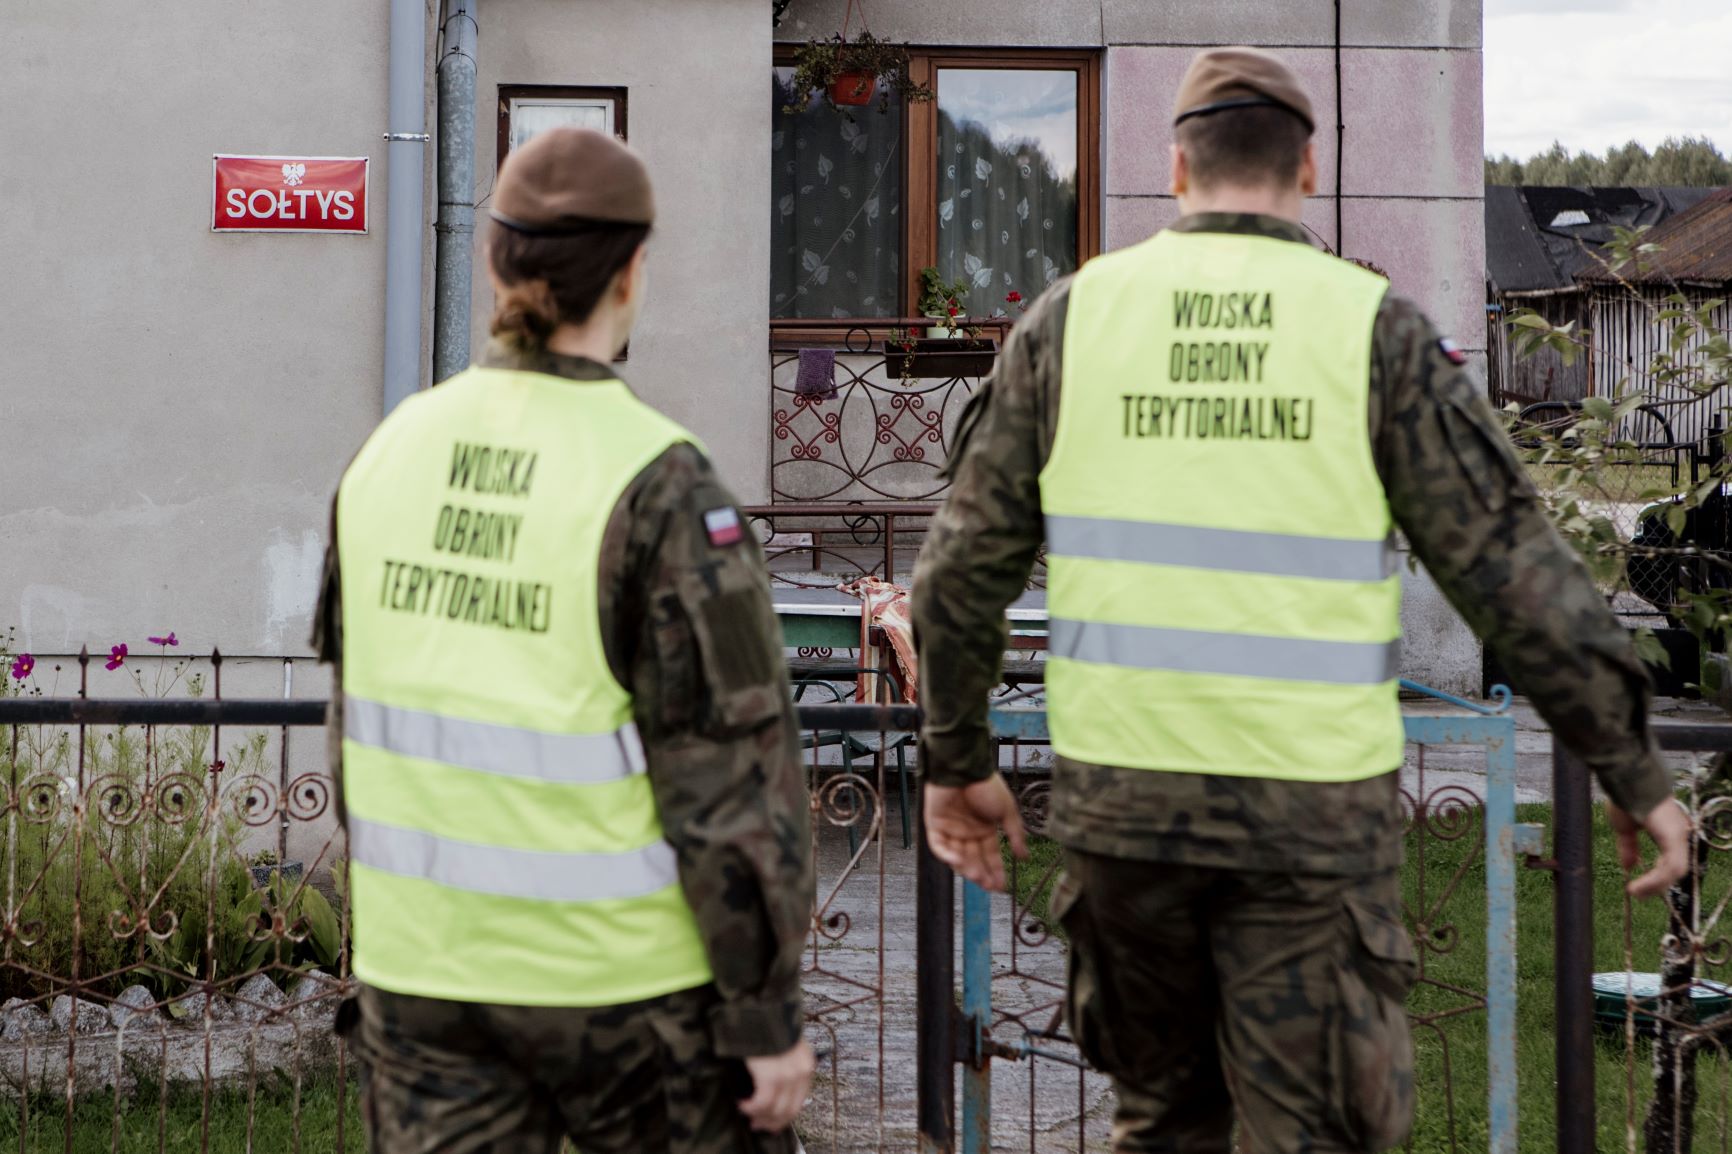 Szkoleniowy weekend lubelskich terytorialsów oraz „Silne wsparcie” dla mieszkańców lubelszczyzny (zdjęcia)